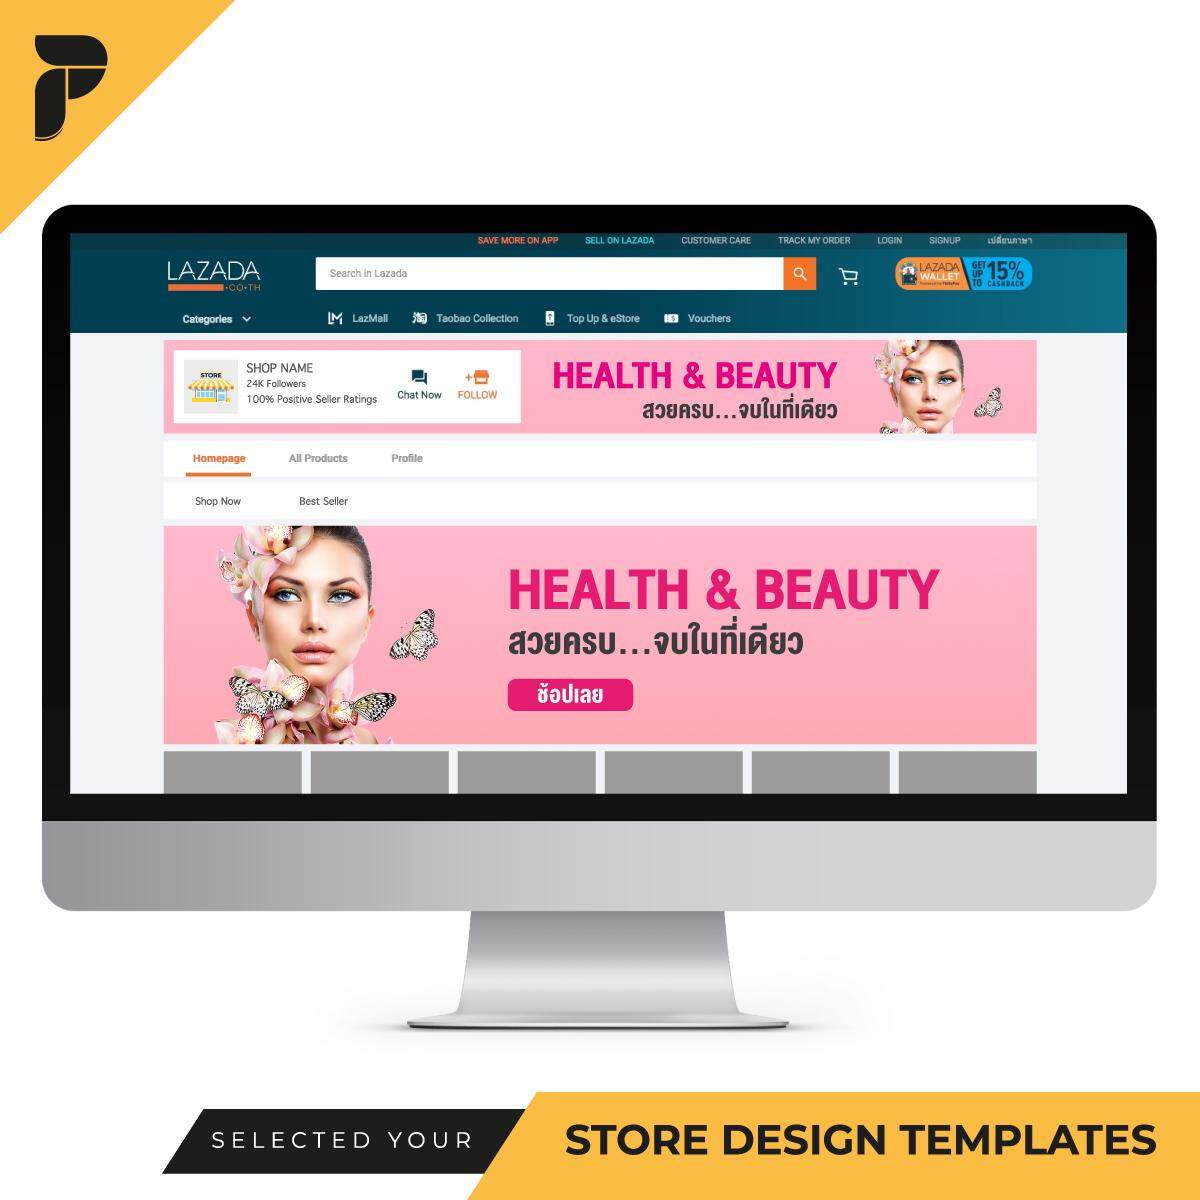 Store Design Templates Banner Ready-to-Work by PathGraphic Studio - Health and Beauty แบนเนอร์ตกแต่งร้าน แบนเนอร์สำเร็จรูป สำหรับตกแต่งหน้าร้านค้าออนไลน์